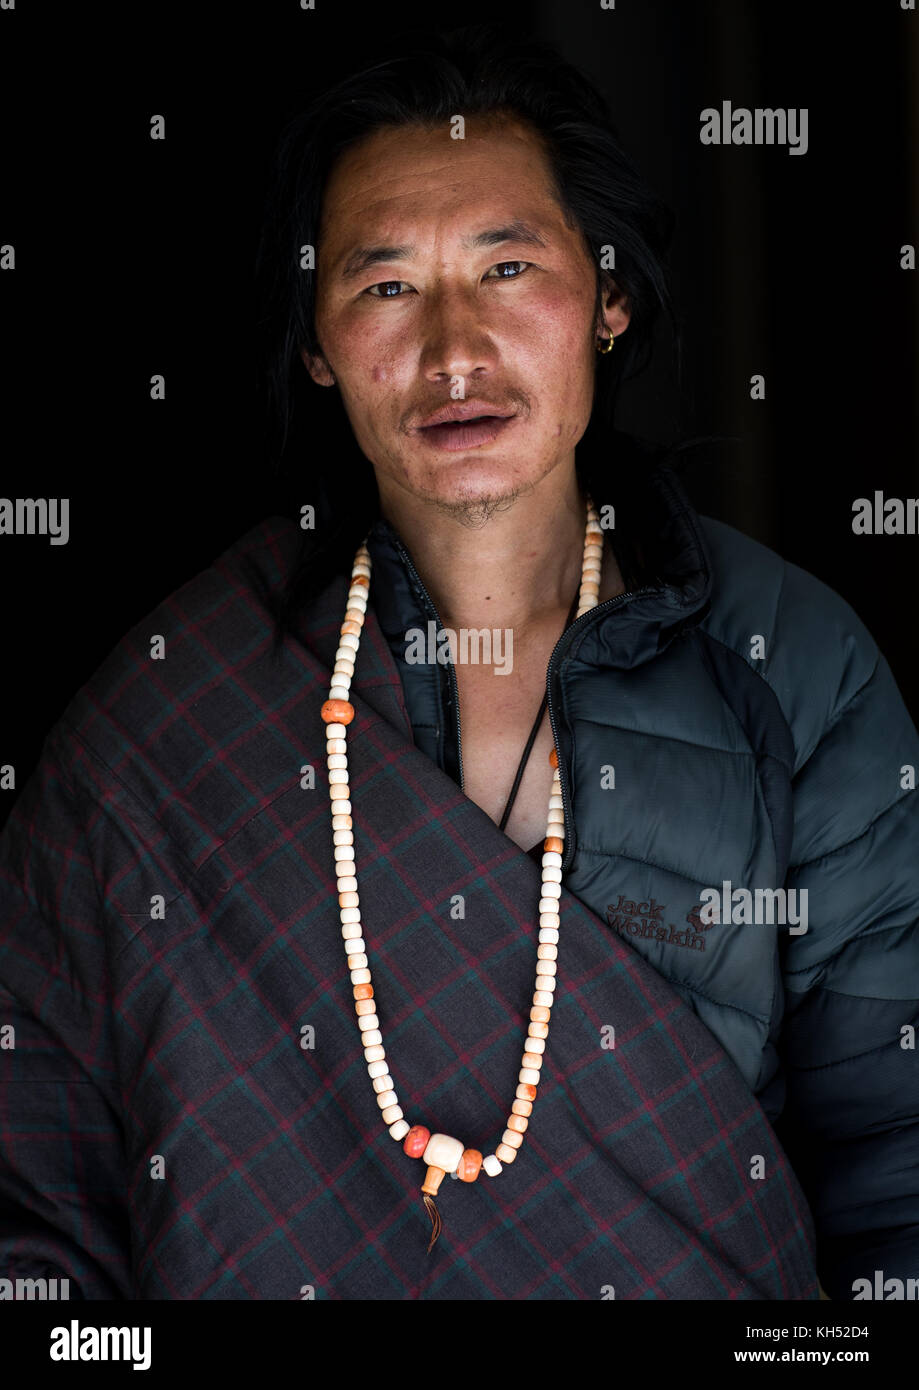 Porträt eines tibetischen Nomaden Mann mit einer Halskette, Provinz Qinghai, Tsekhog, China Stockfoto